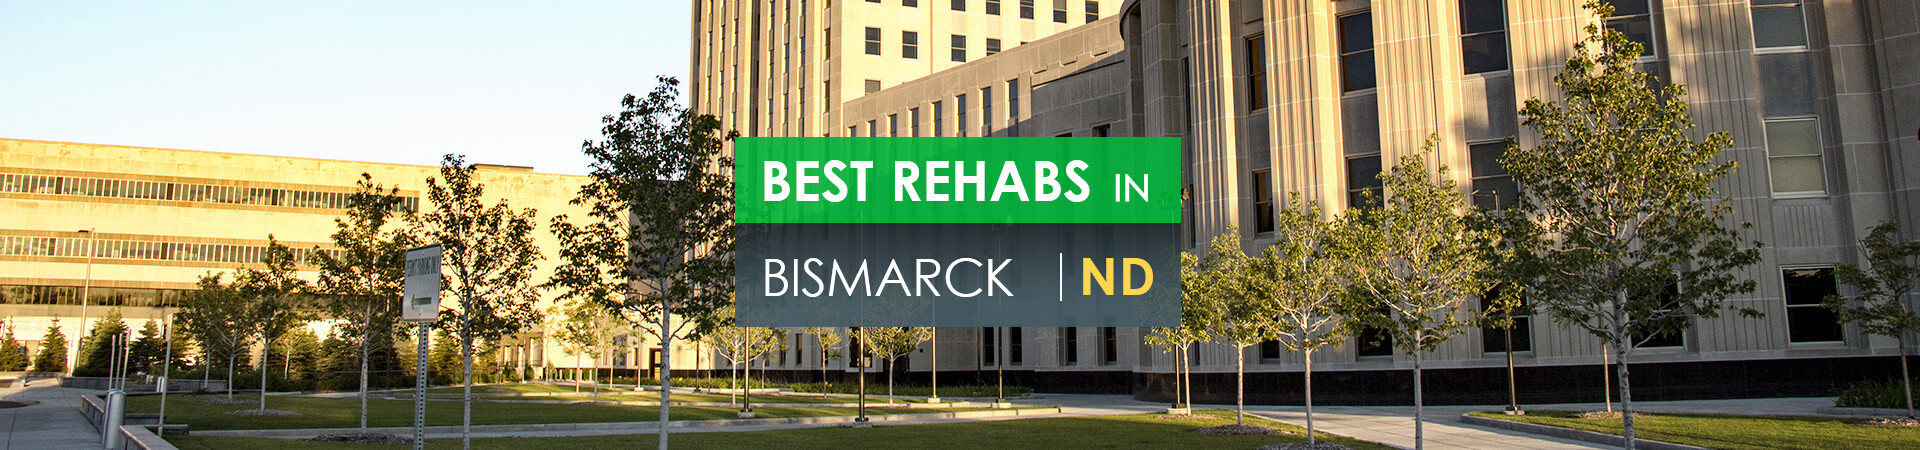 Best rehabs in Bismarck, ND